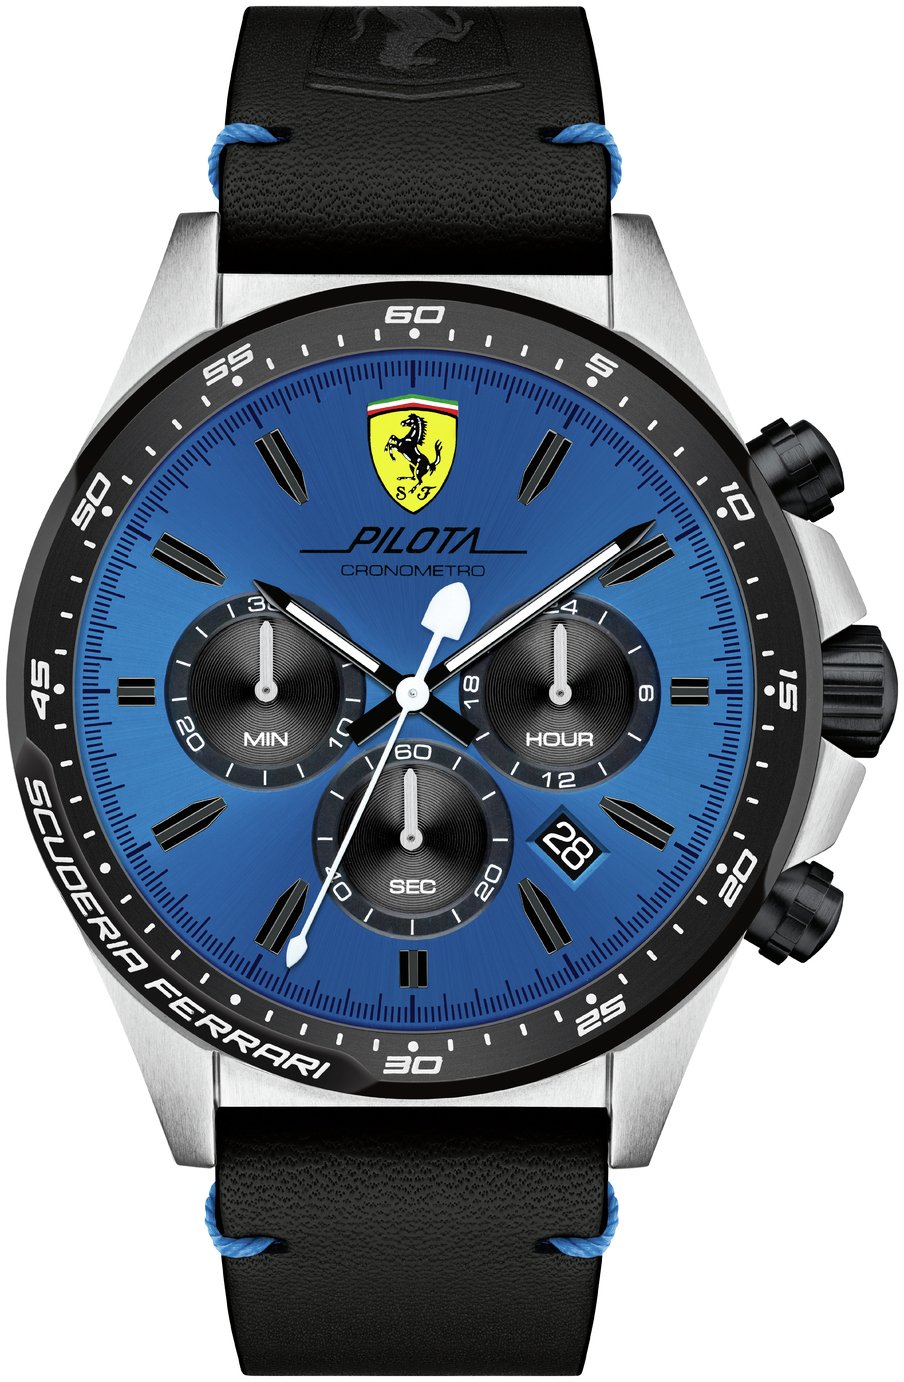 Циферблаты хронограф. Часы Феррари Скудерия. Часы Ferrari pilota. Часы Феррари pilota мужские. Ferrari Scuderia ремешок.